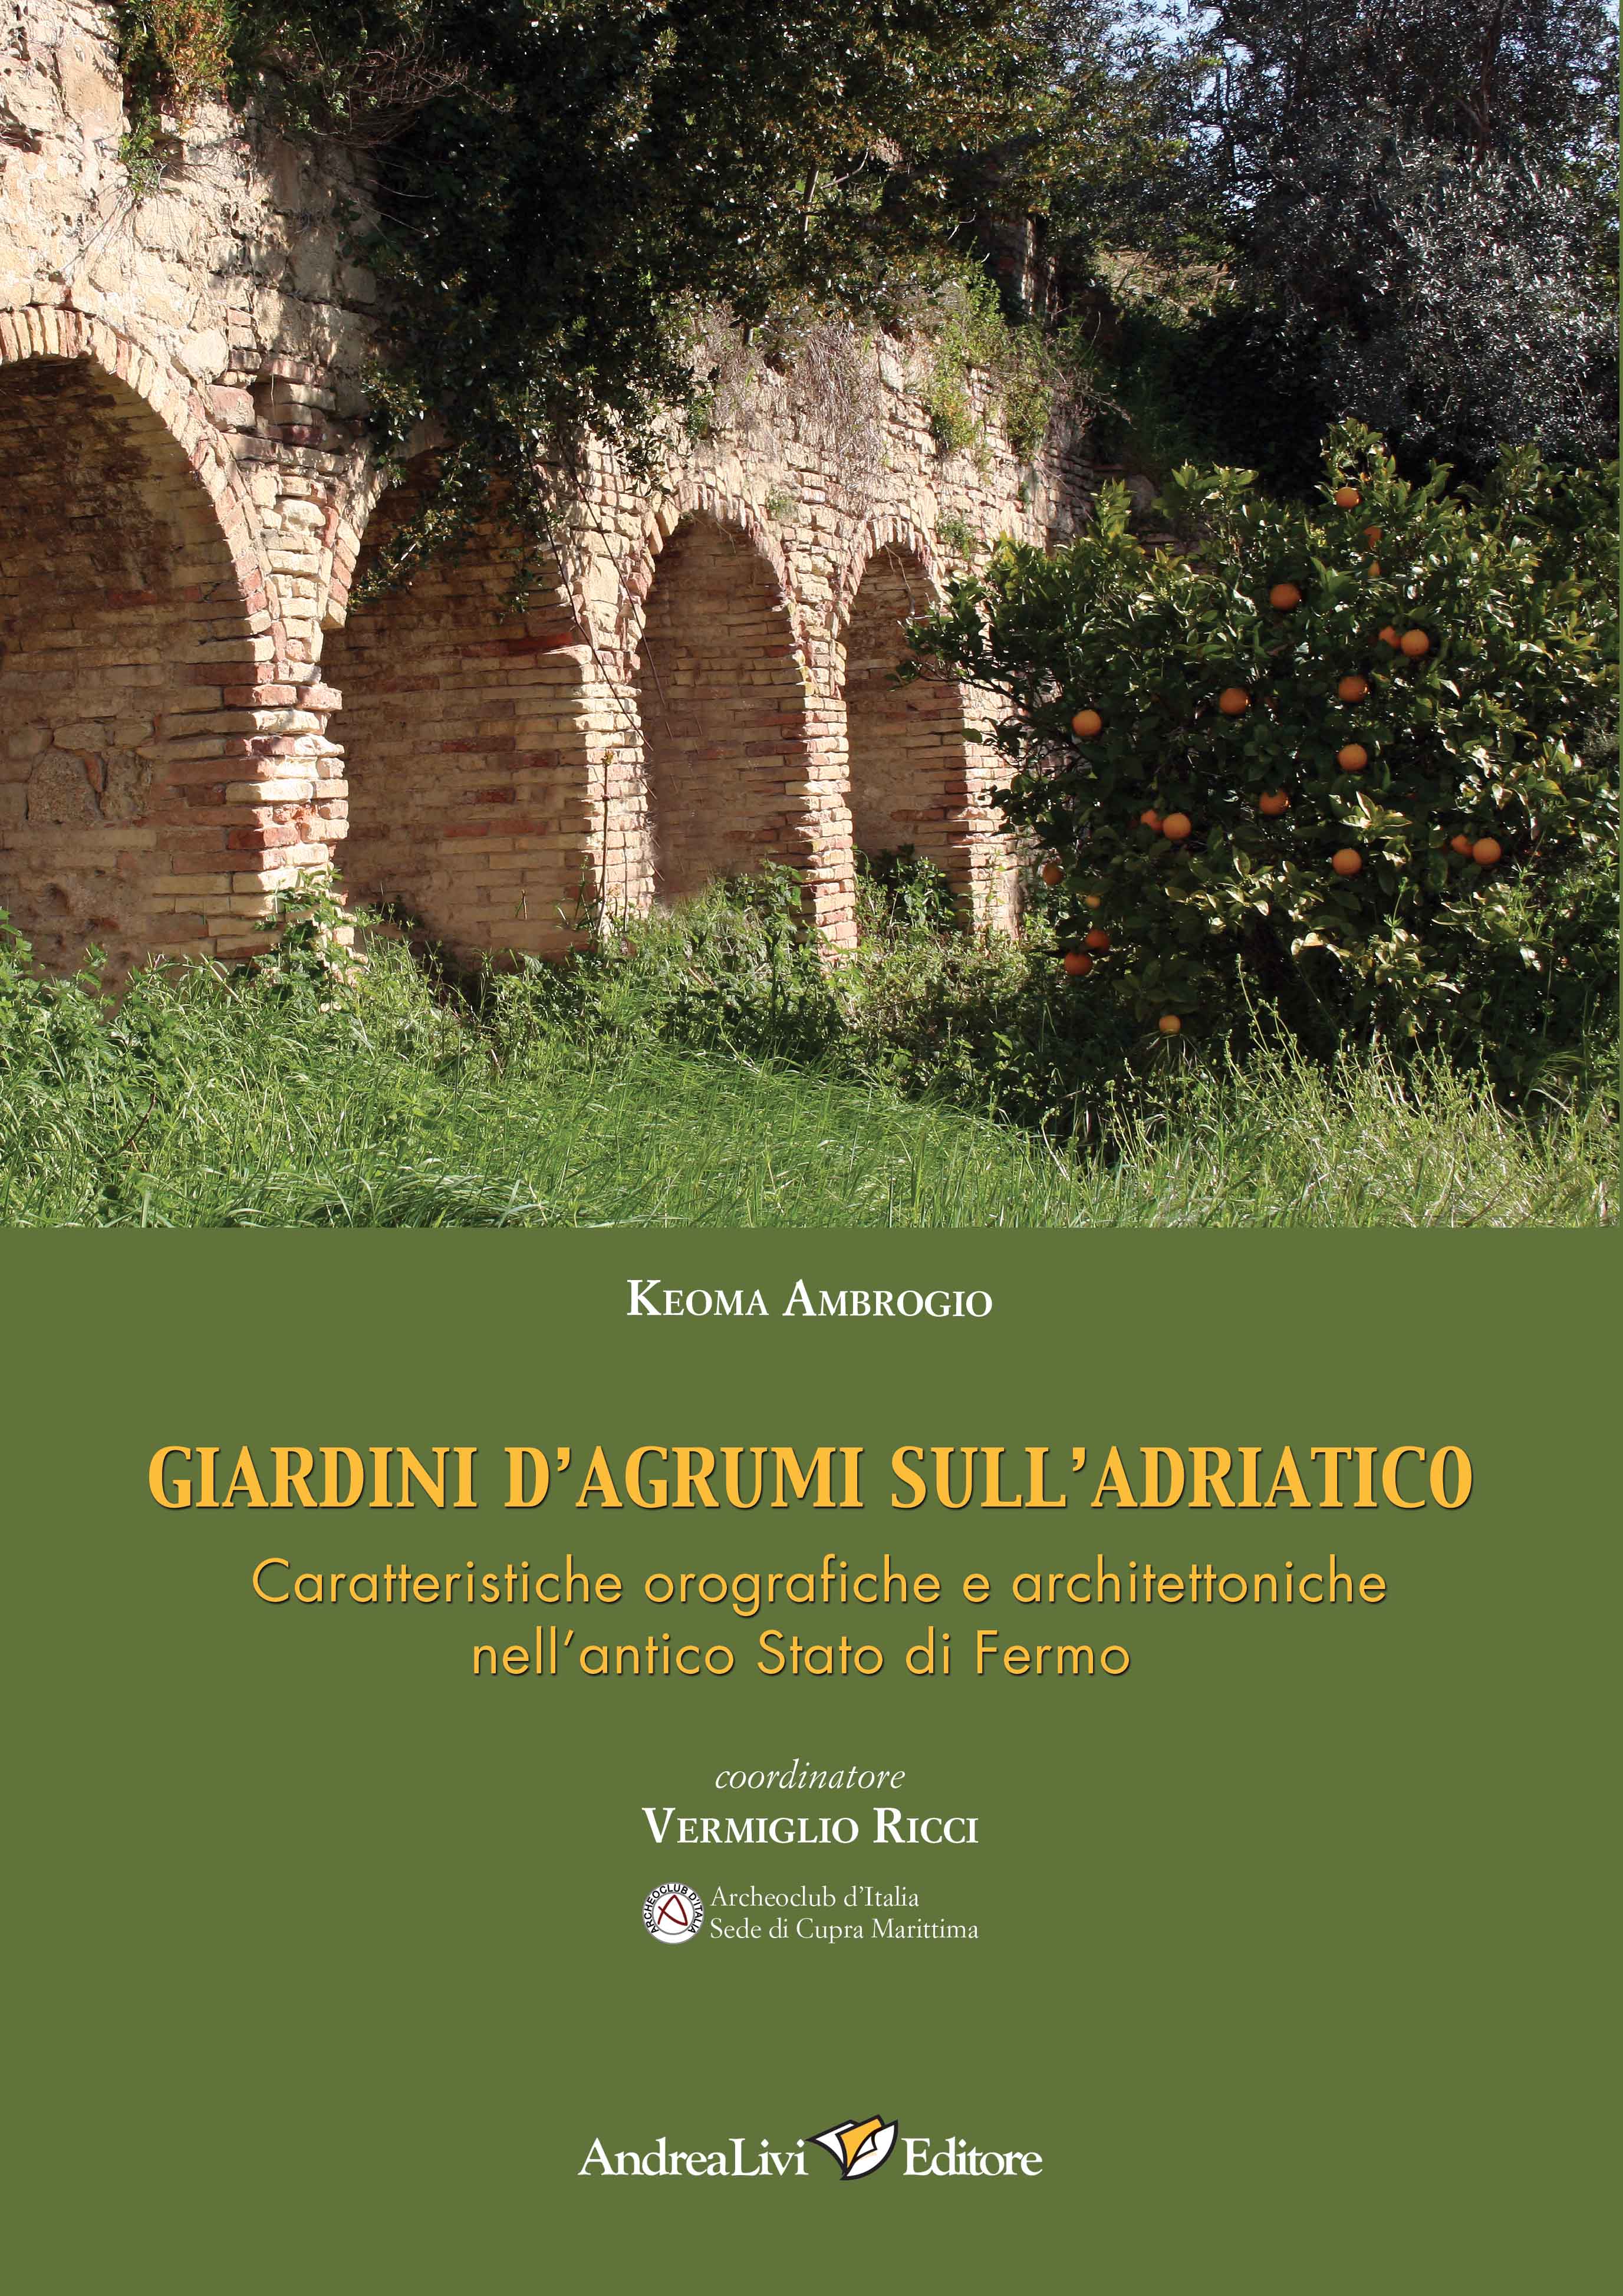 Keoma Ambrogio Giardini d’agrumi sull’Adriatico. Caratteristiche orografiche e architettoniche nell’antico Stato di Fermo